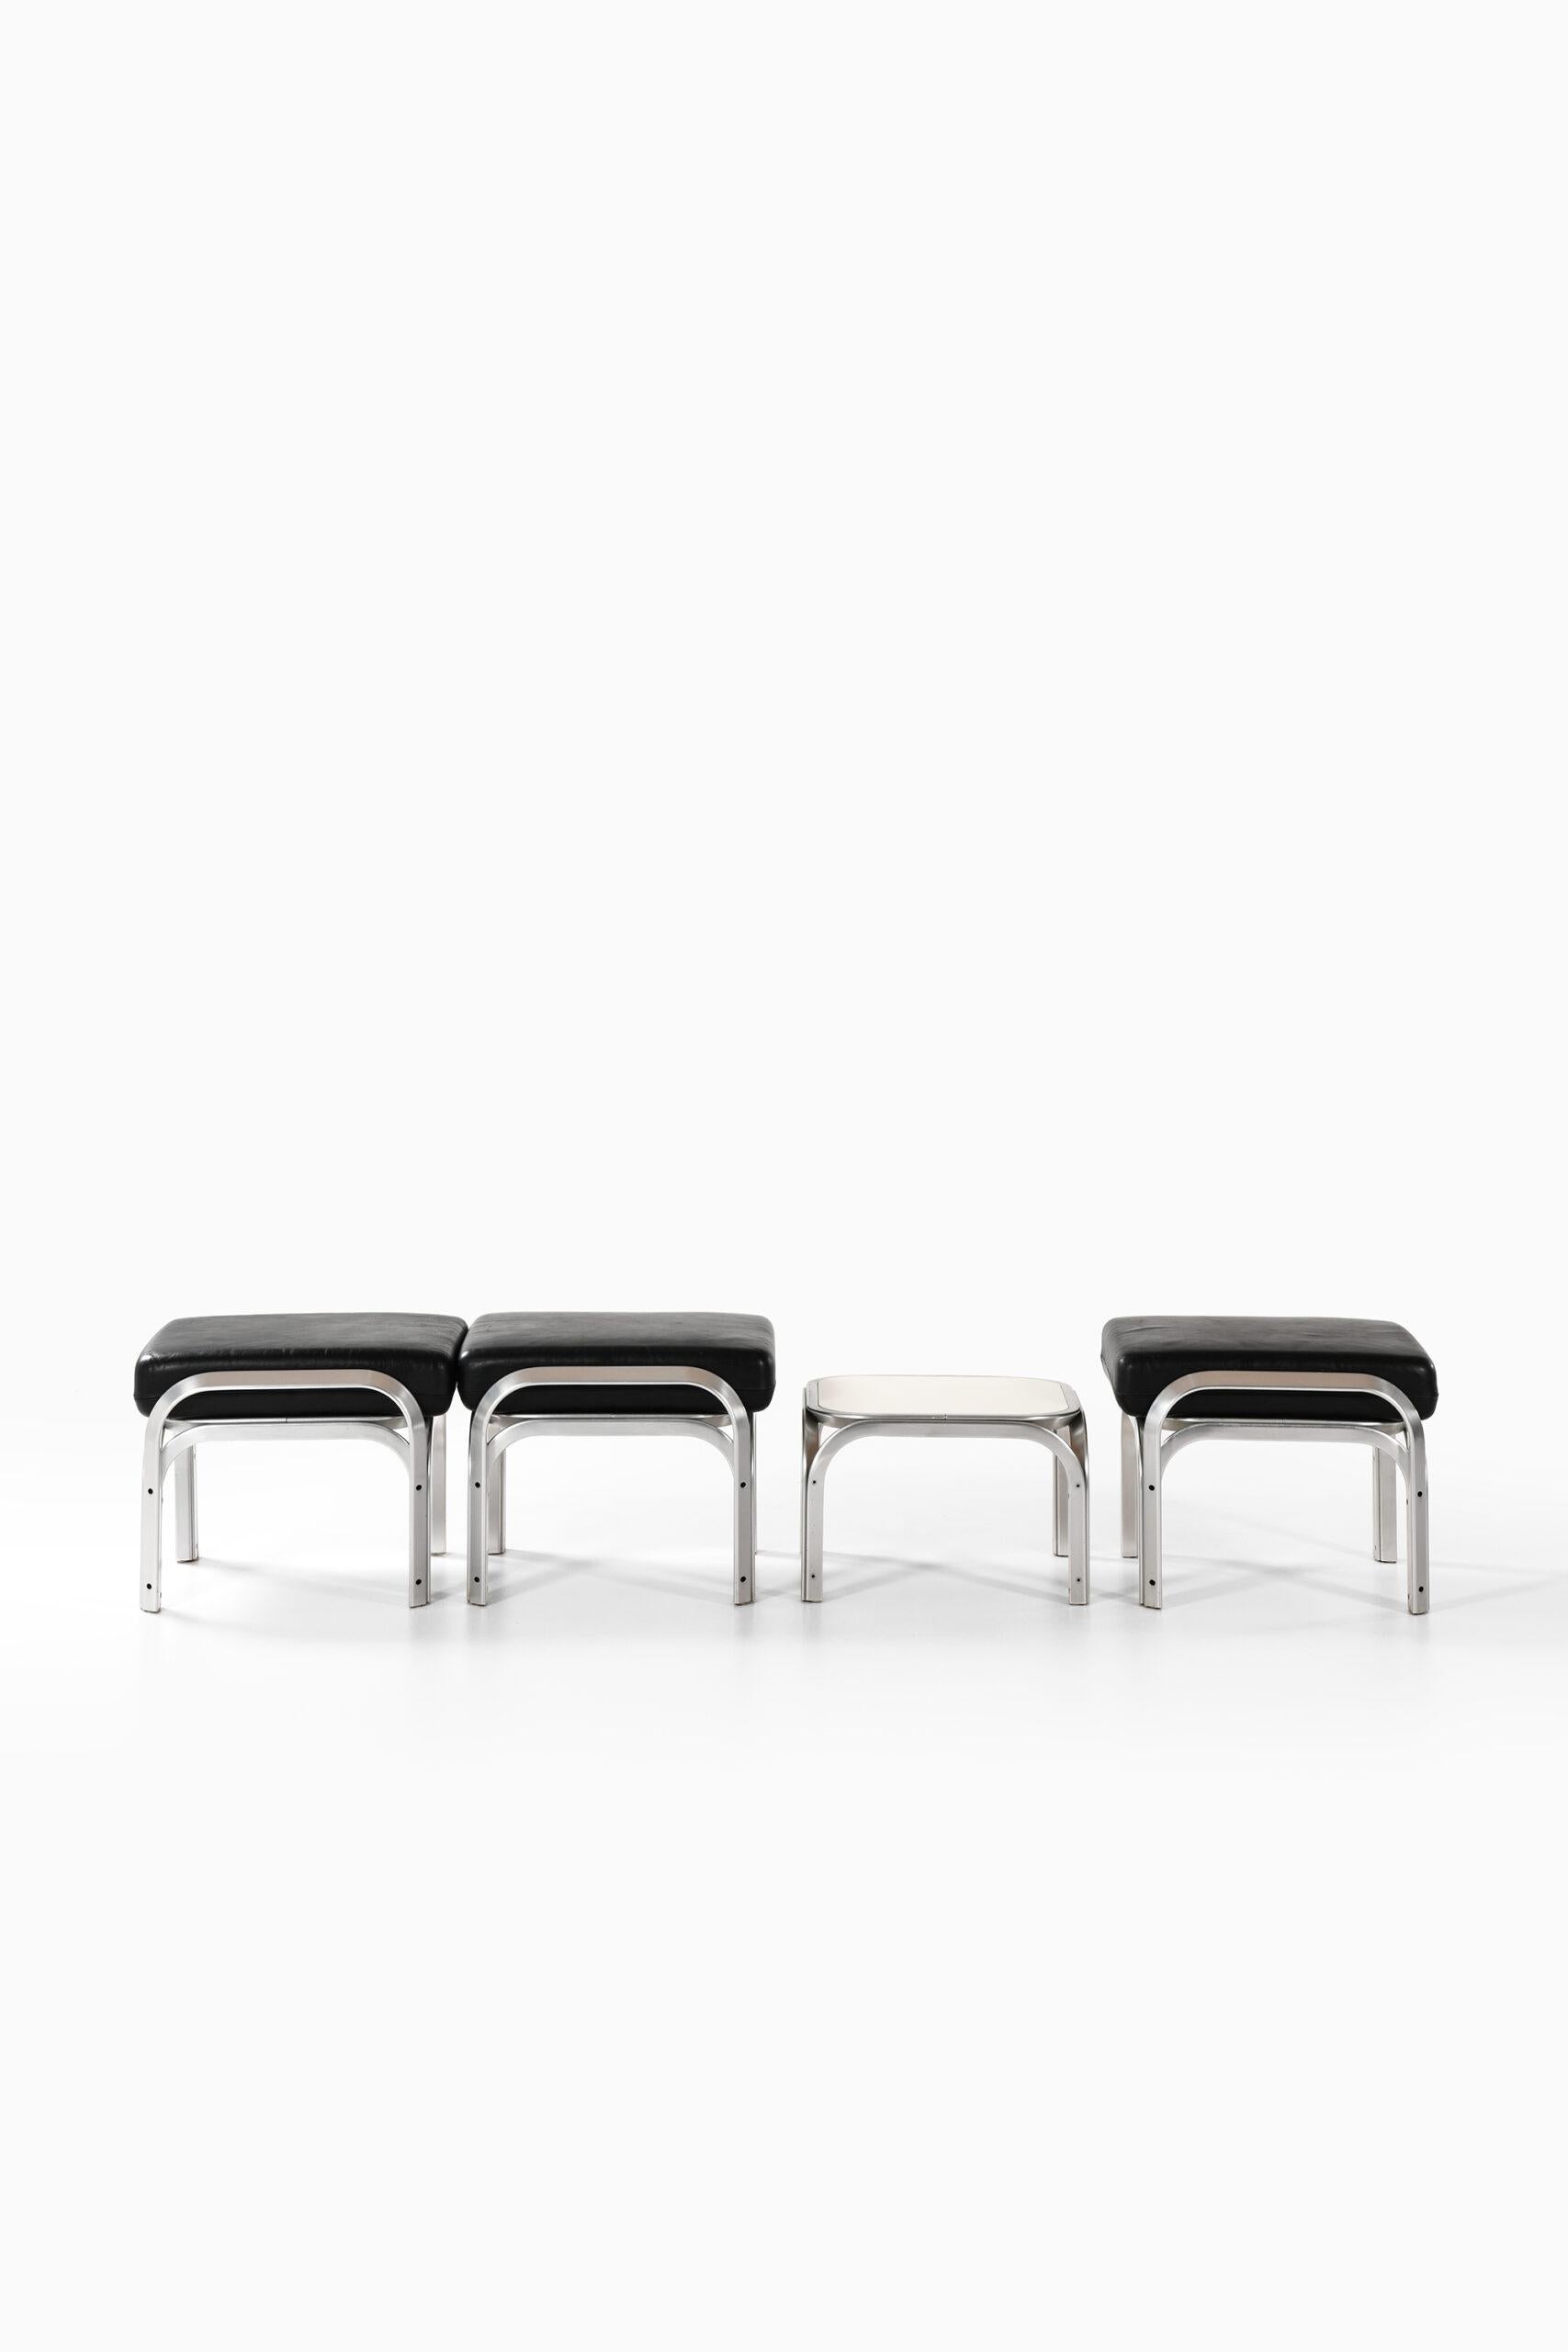 Très rare groupe de sièges composé de 3 tabourets et d'une table, conçu par Jørn Utzon. Produit par Fritz Hansen au Danemark.
Dimensions tabouret : (L x P x H) : 56 x 56 x 44 cm.
Dimensions de la table : (L x P x H) : 50 x 50 x 32 cm.